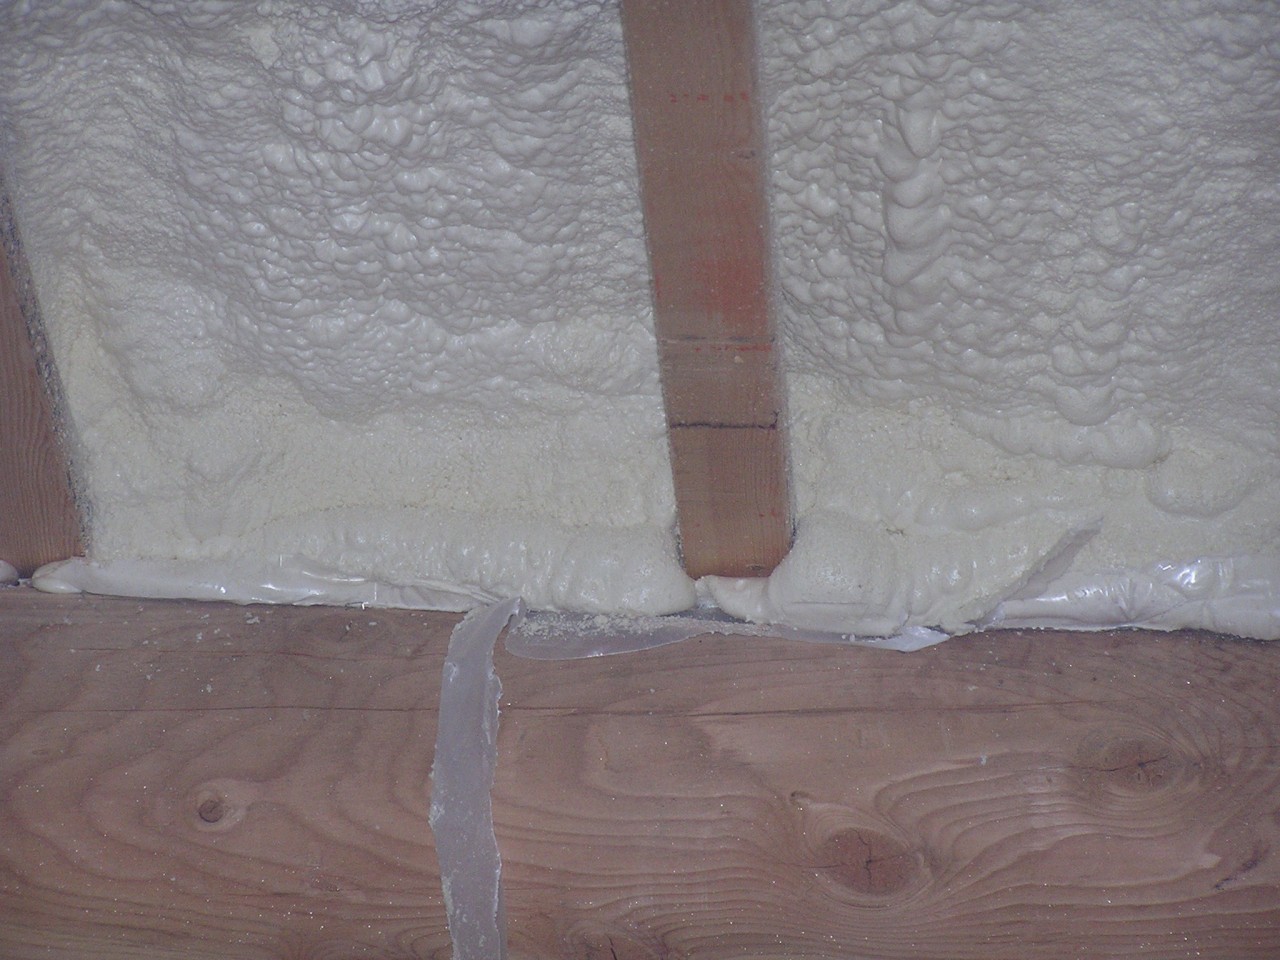 http://4.bp.blogspot.com/_YbH39bWalrQ/TUYF29wMoRI/AAAAAAAAAjM/KGk9-v3cjI4/s1600/Foam.roof.meets.wall.jpg